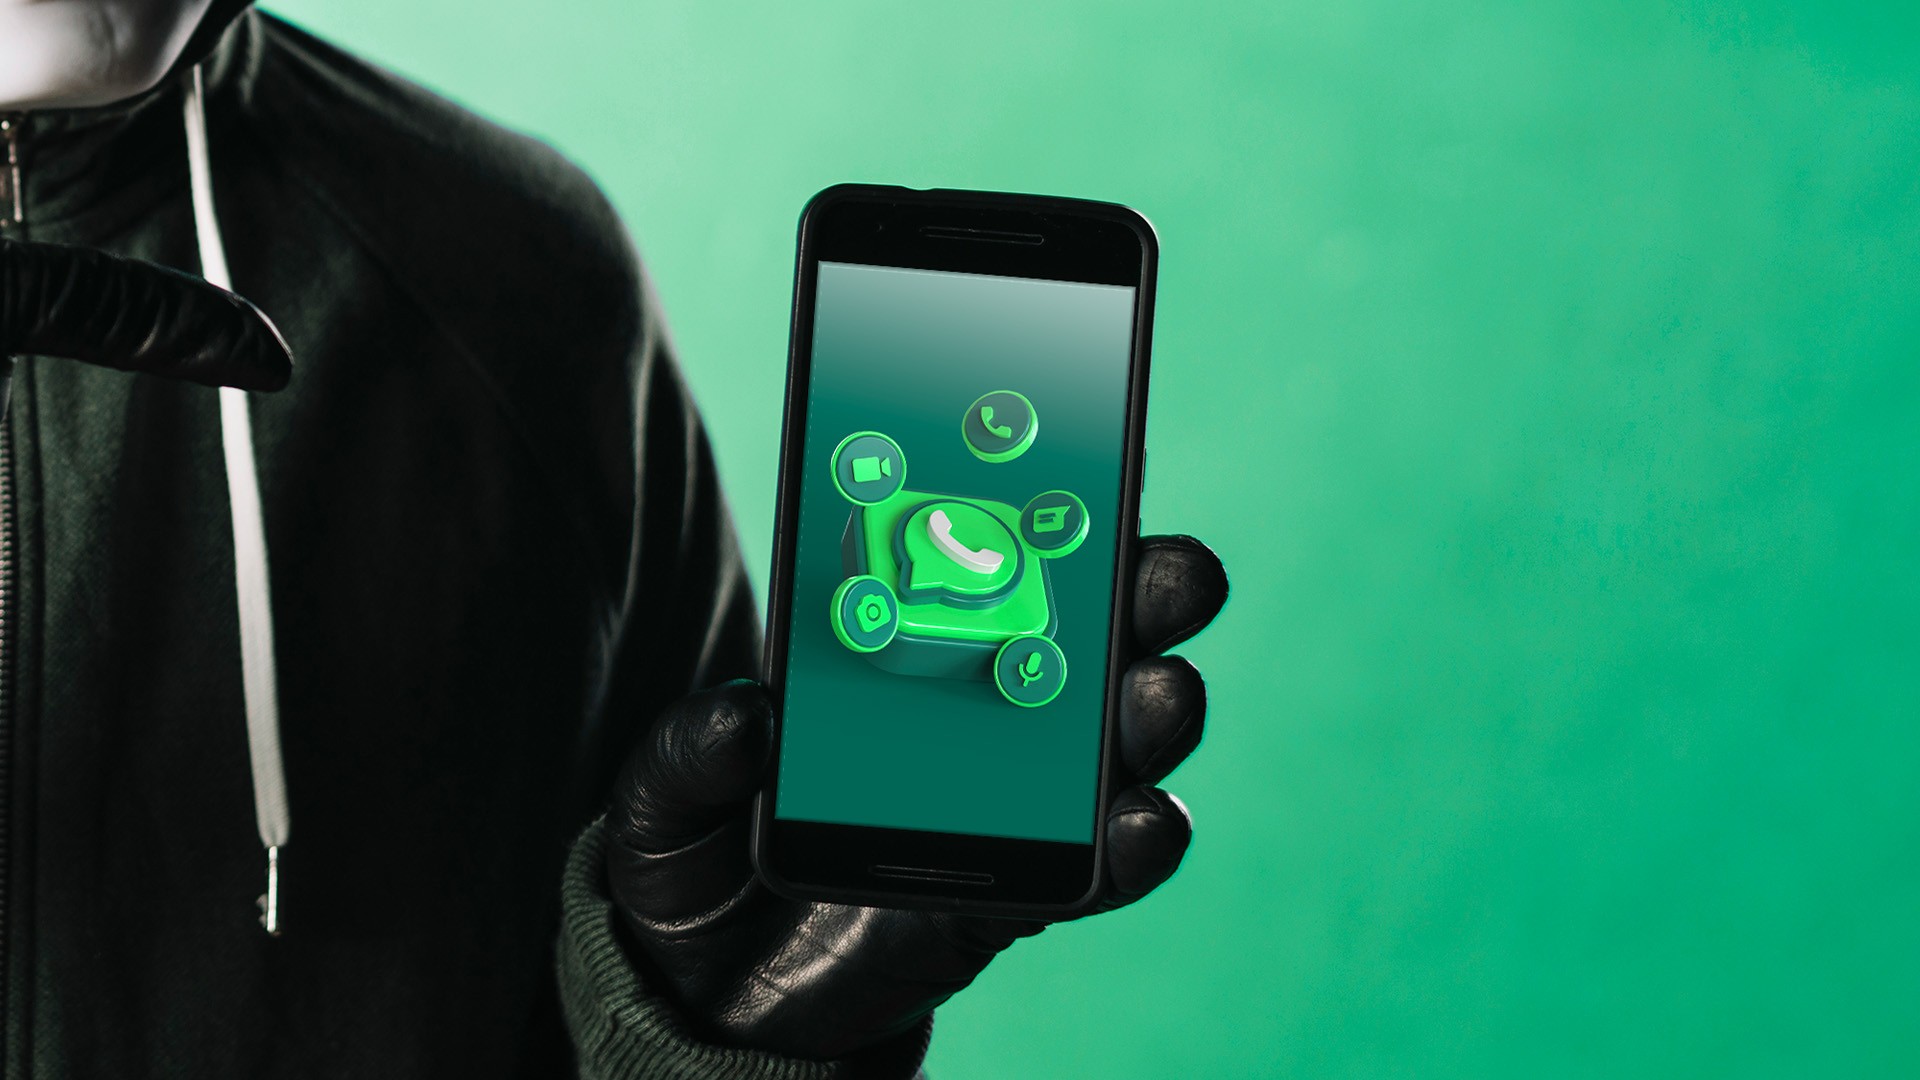 O que significa MB no WhatsApp? Veja 7 gírias muito populares no app